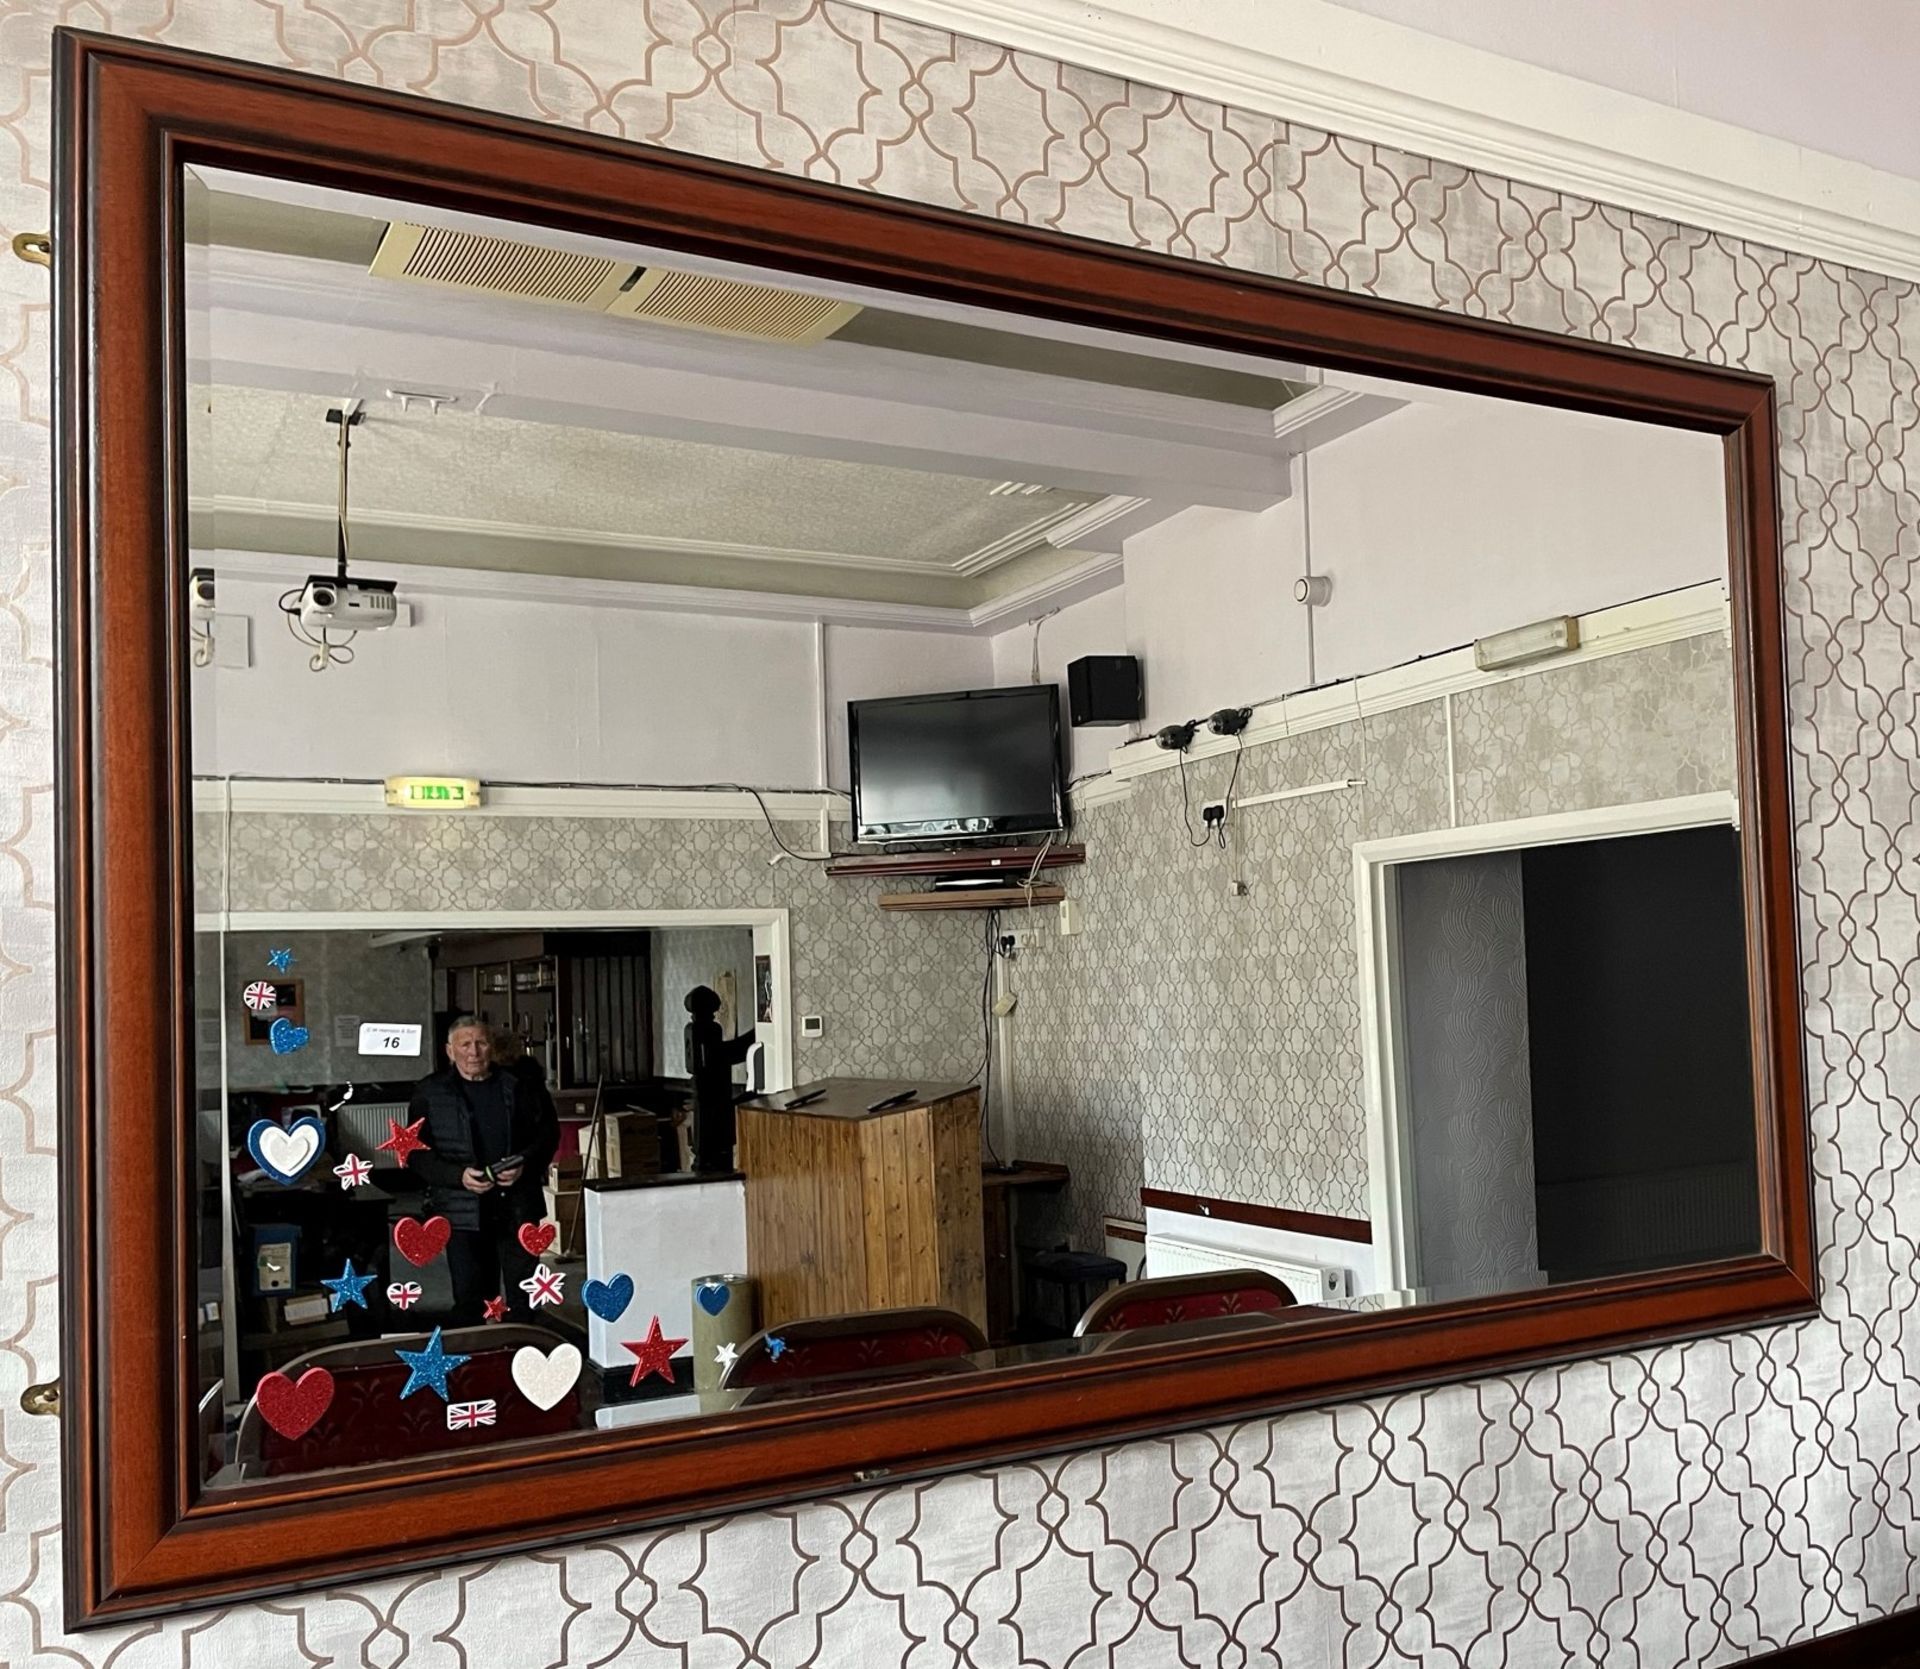 Darkwood framed, bevel edged wall mirror - 165cm x 105cm.